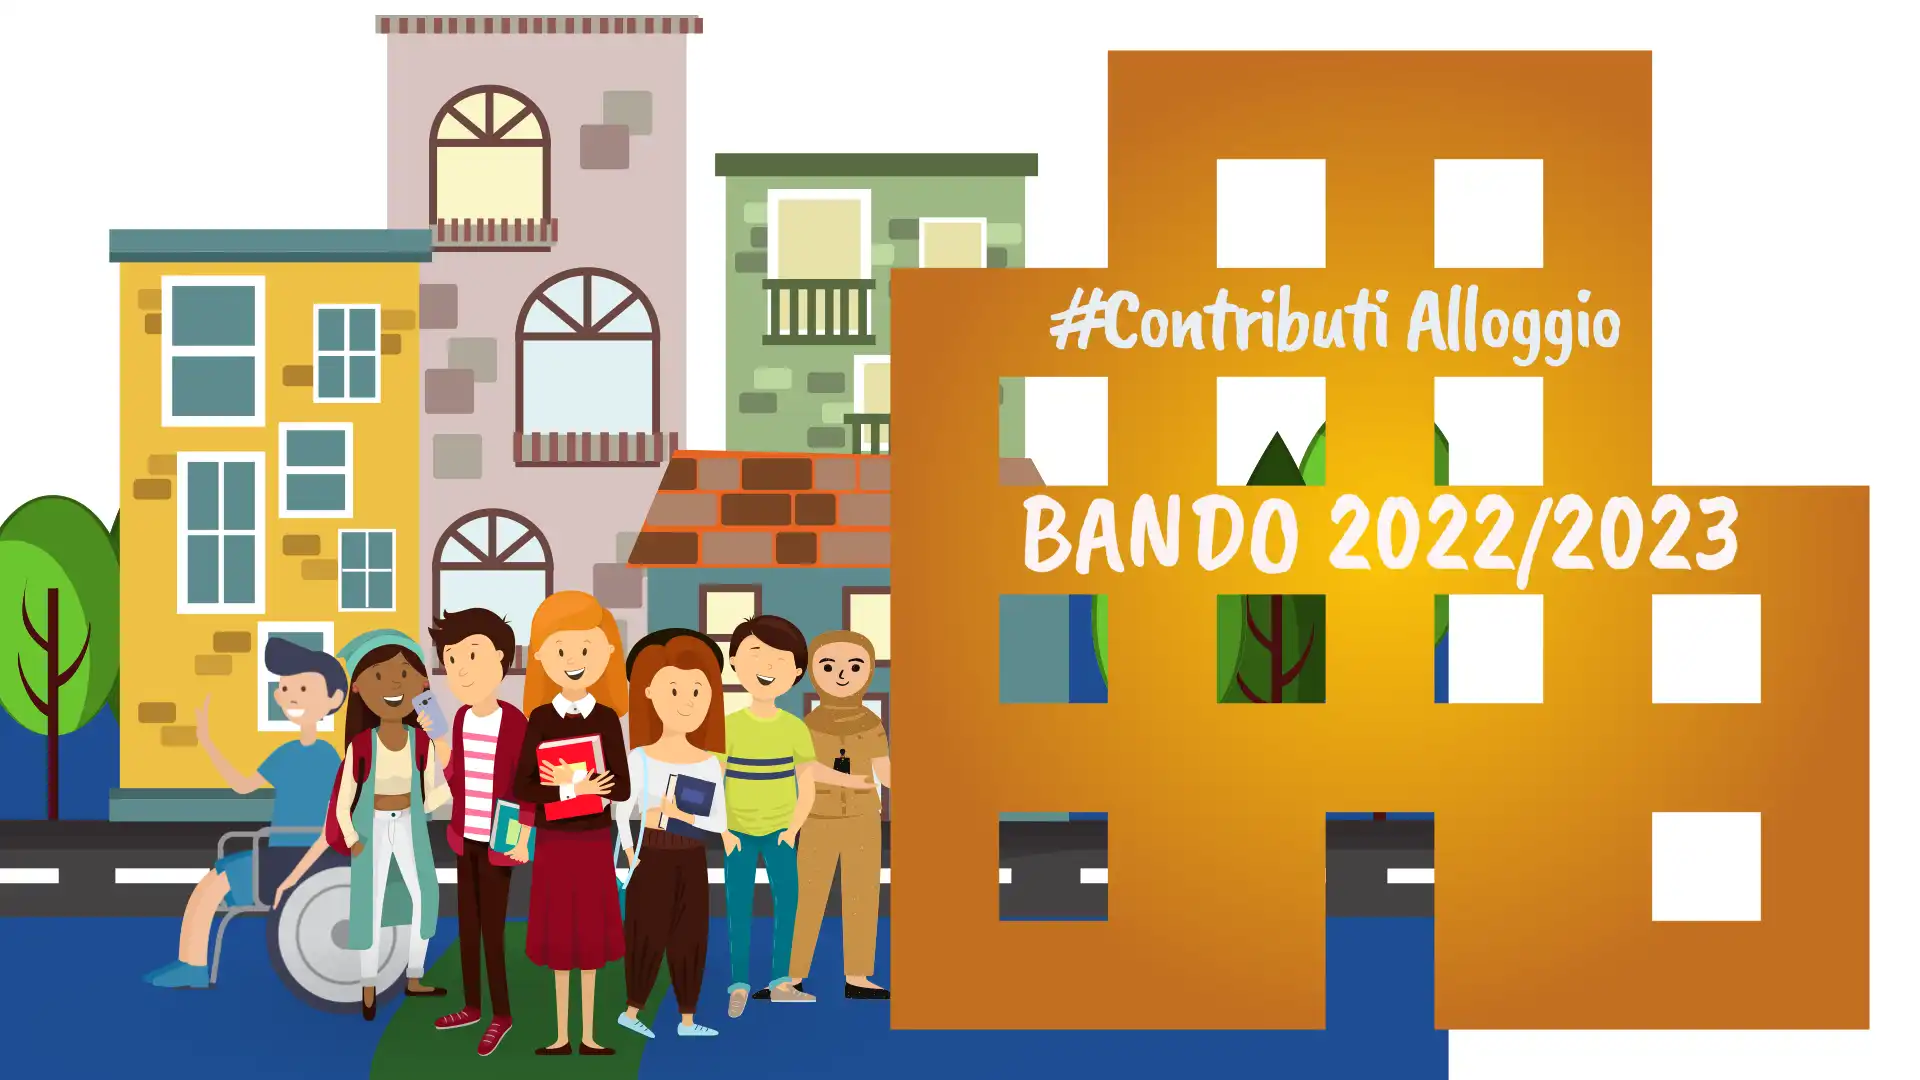 On line il Bando contributi alloggio 2022/2023